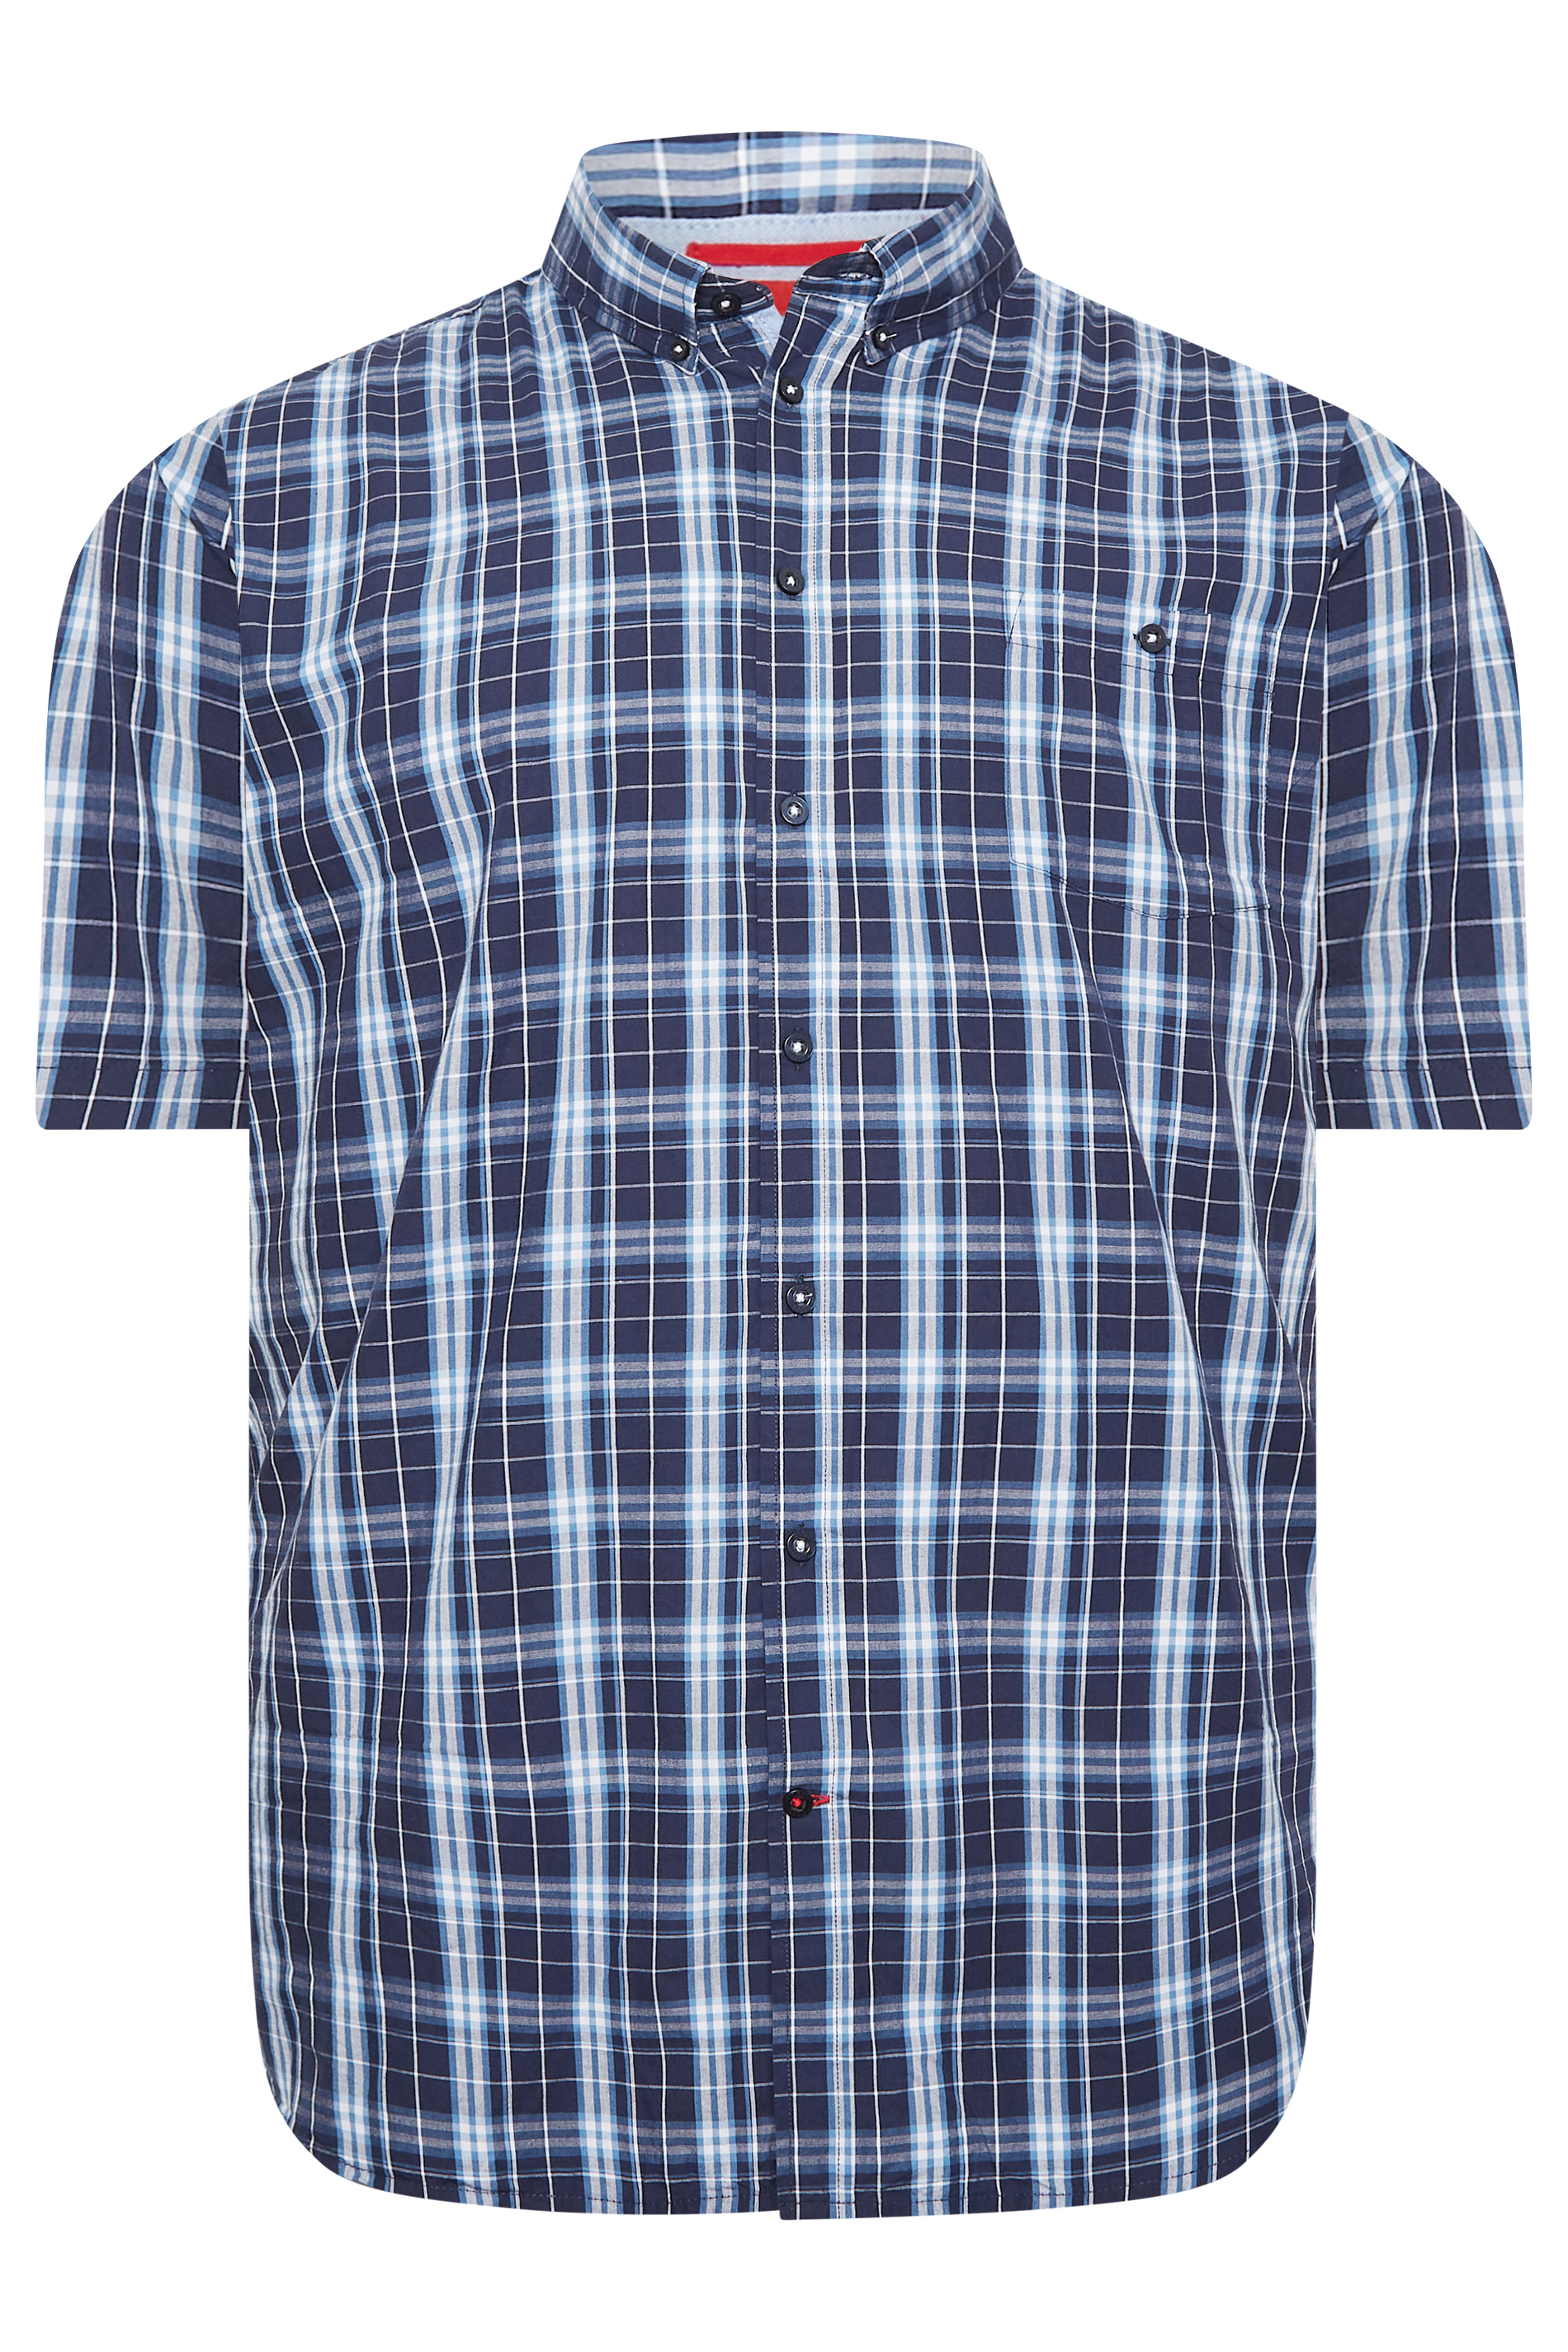 D555 Big & Tall Blue Check Print Shirt | BadRhino 3